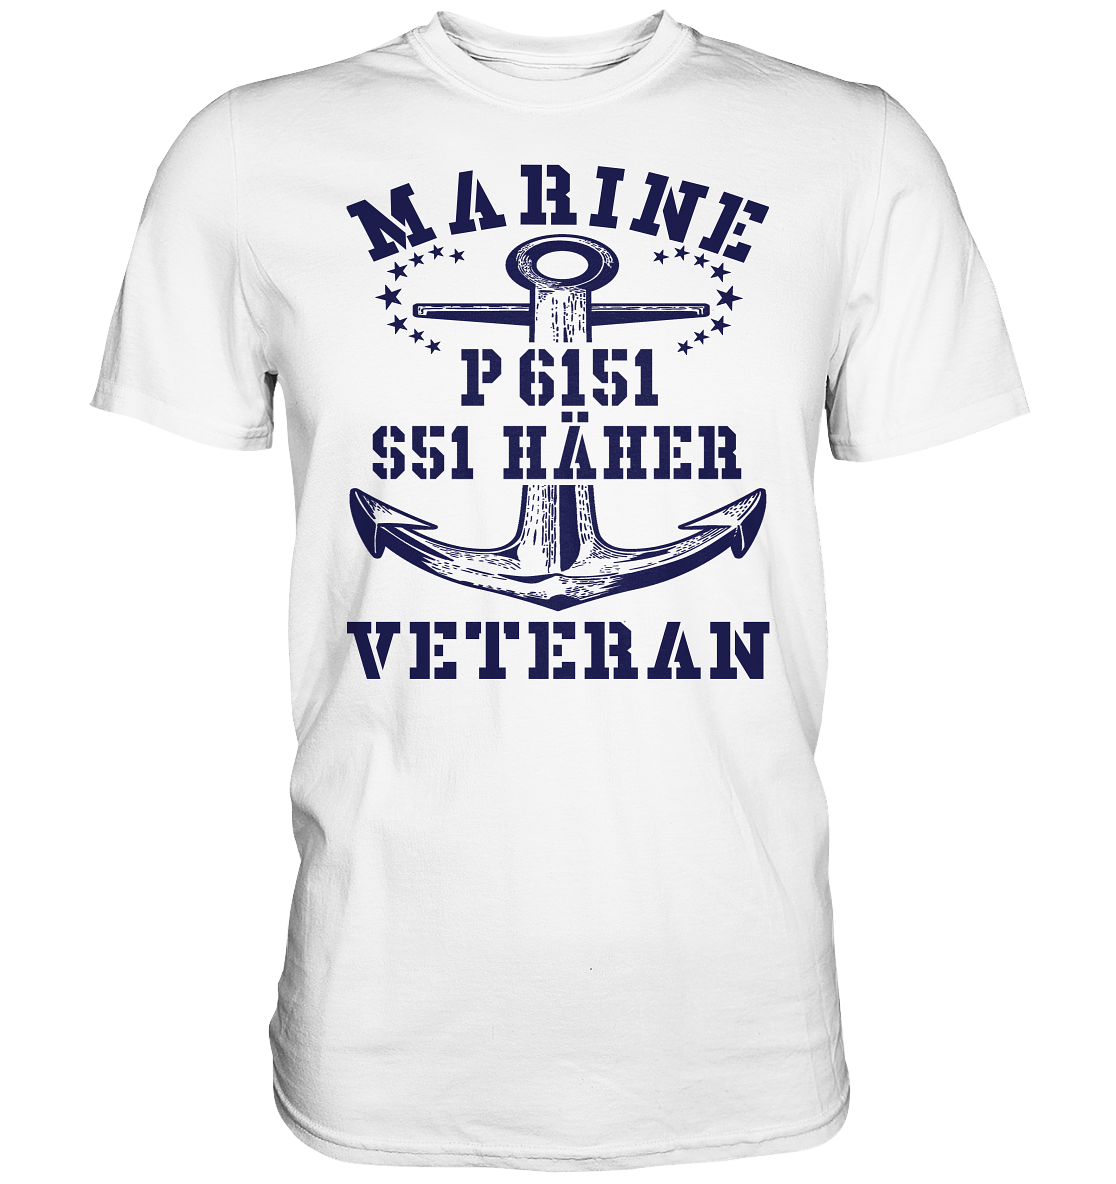 P6151 S51 HÄHER Marine Veteran - Premium Shirt